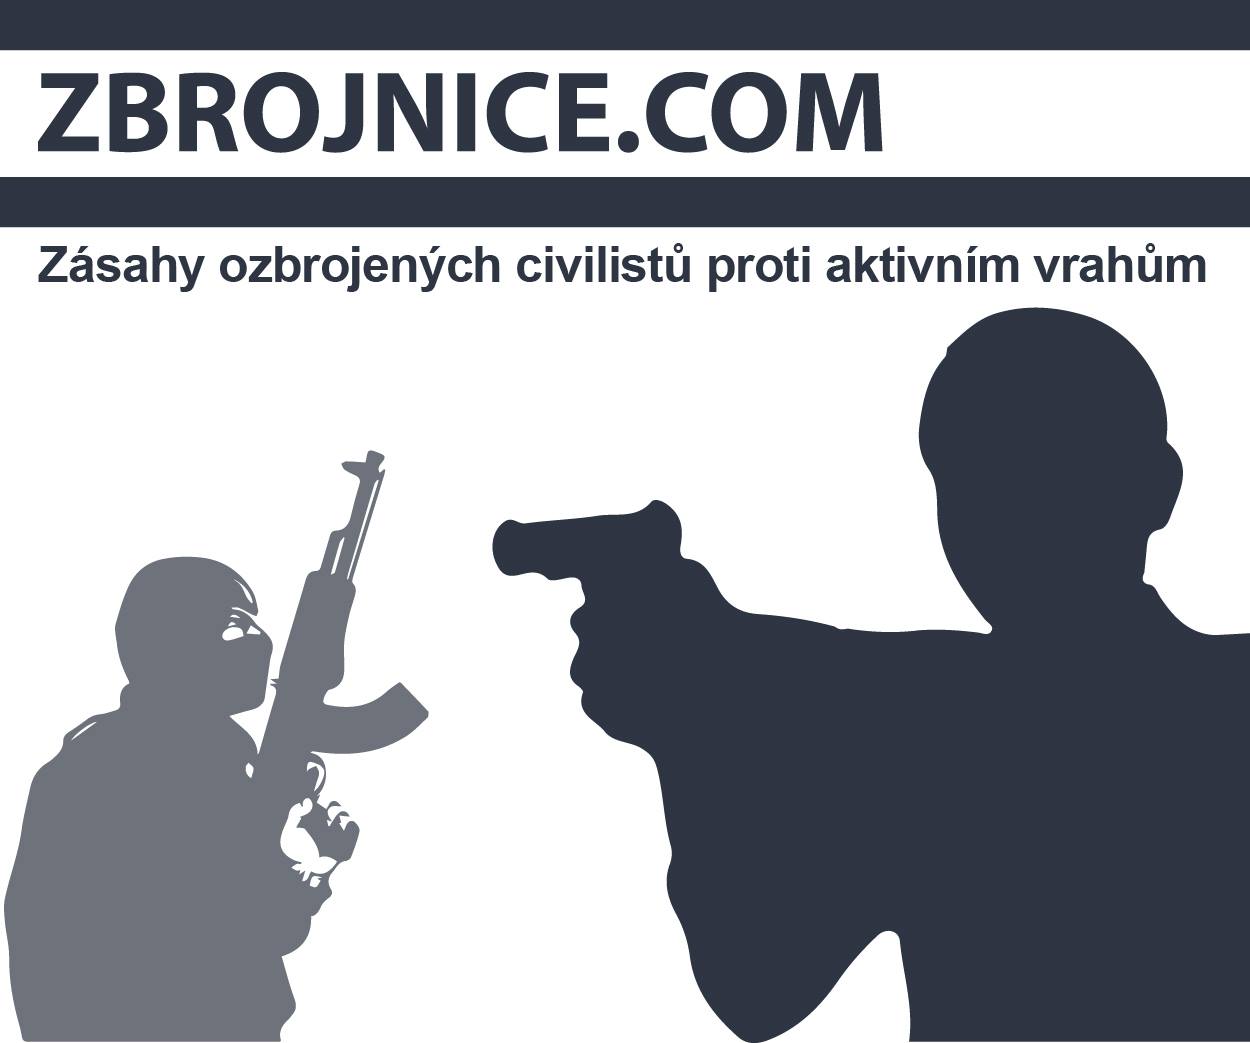 Zbrojnice.com - zásahy ozbrojených civilistů proti aktivním vrahům